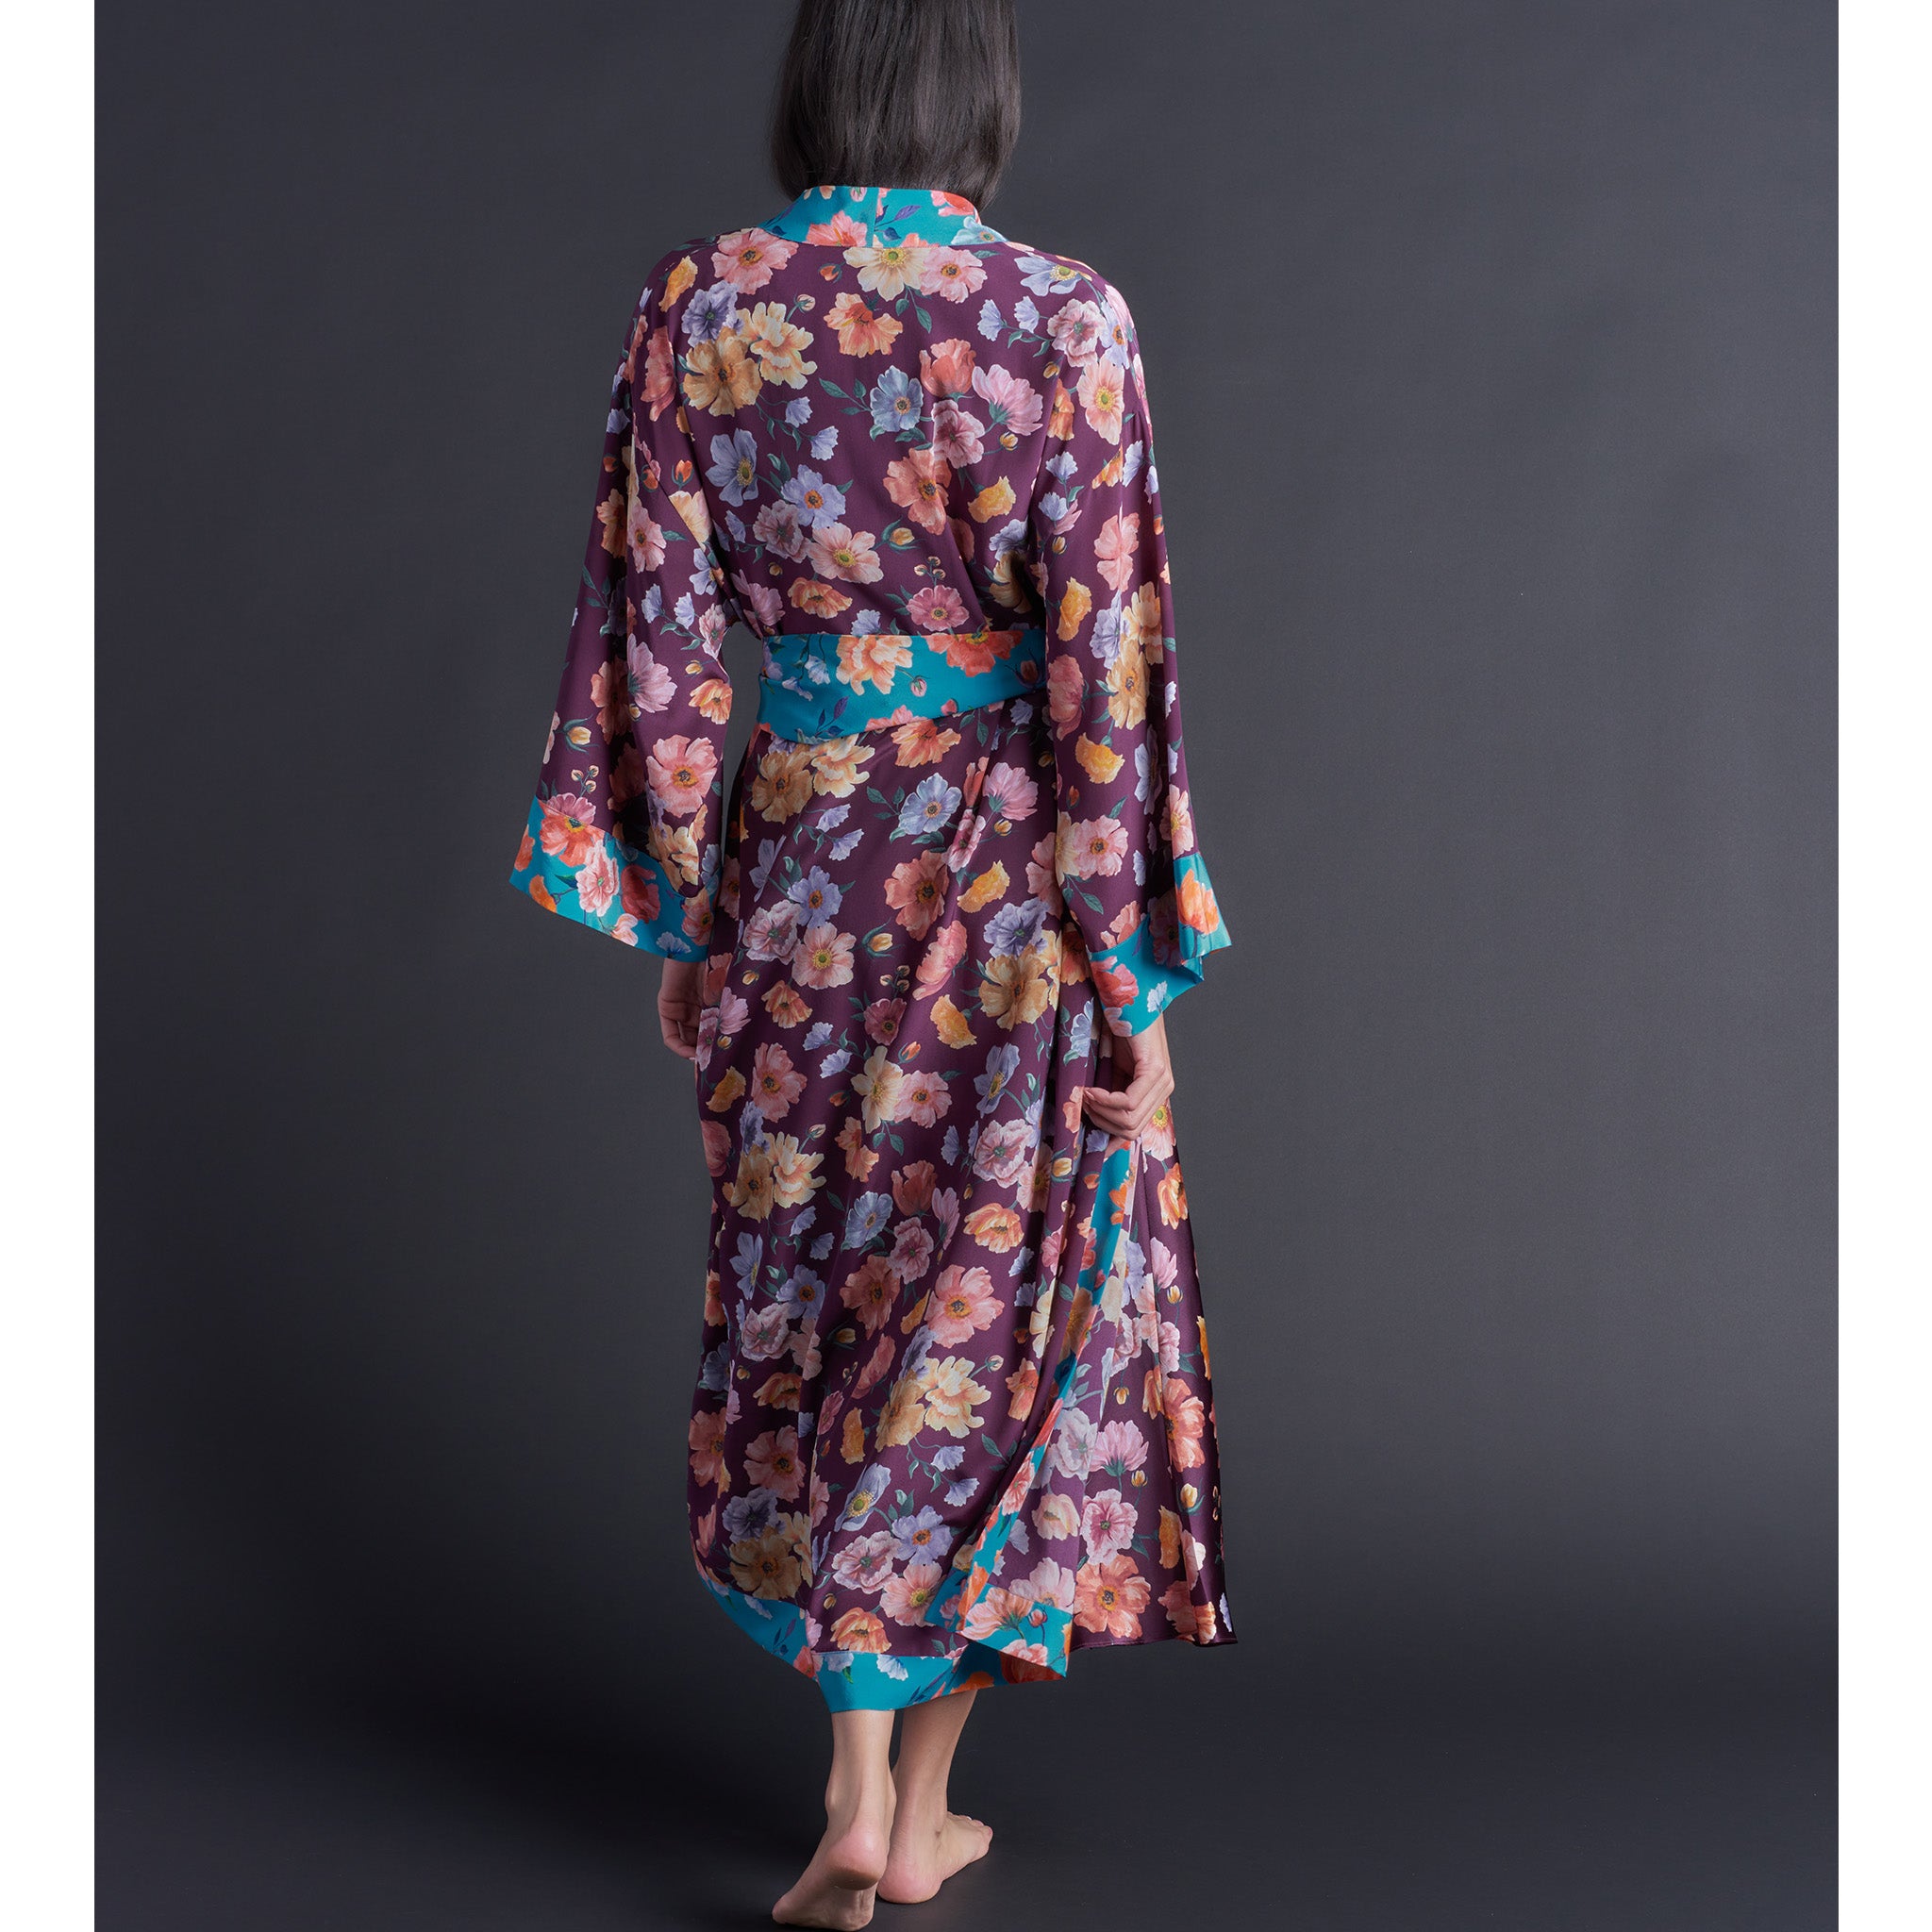 Asteria Kimono Robe in Jessica's Picnic Liberty of London Print Silk Crepe De Chine